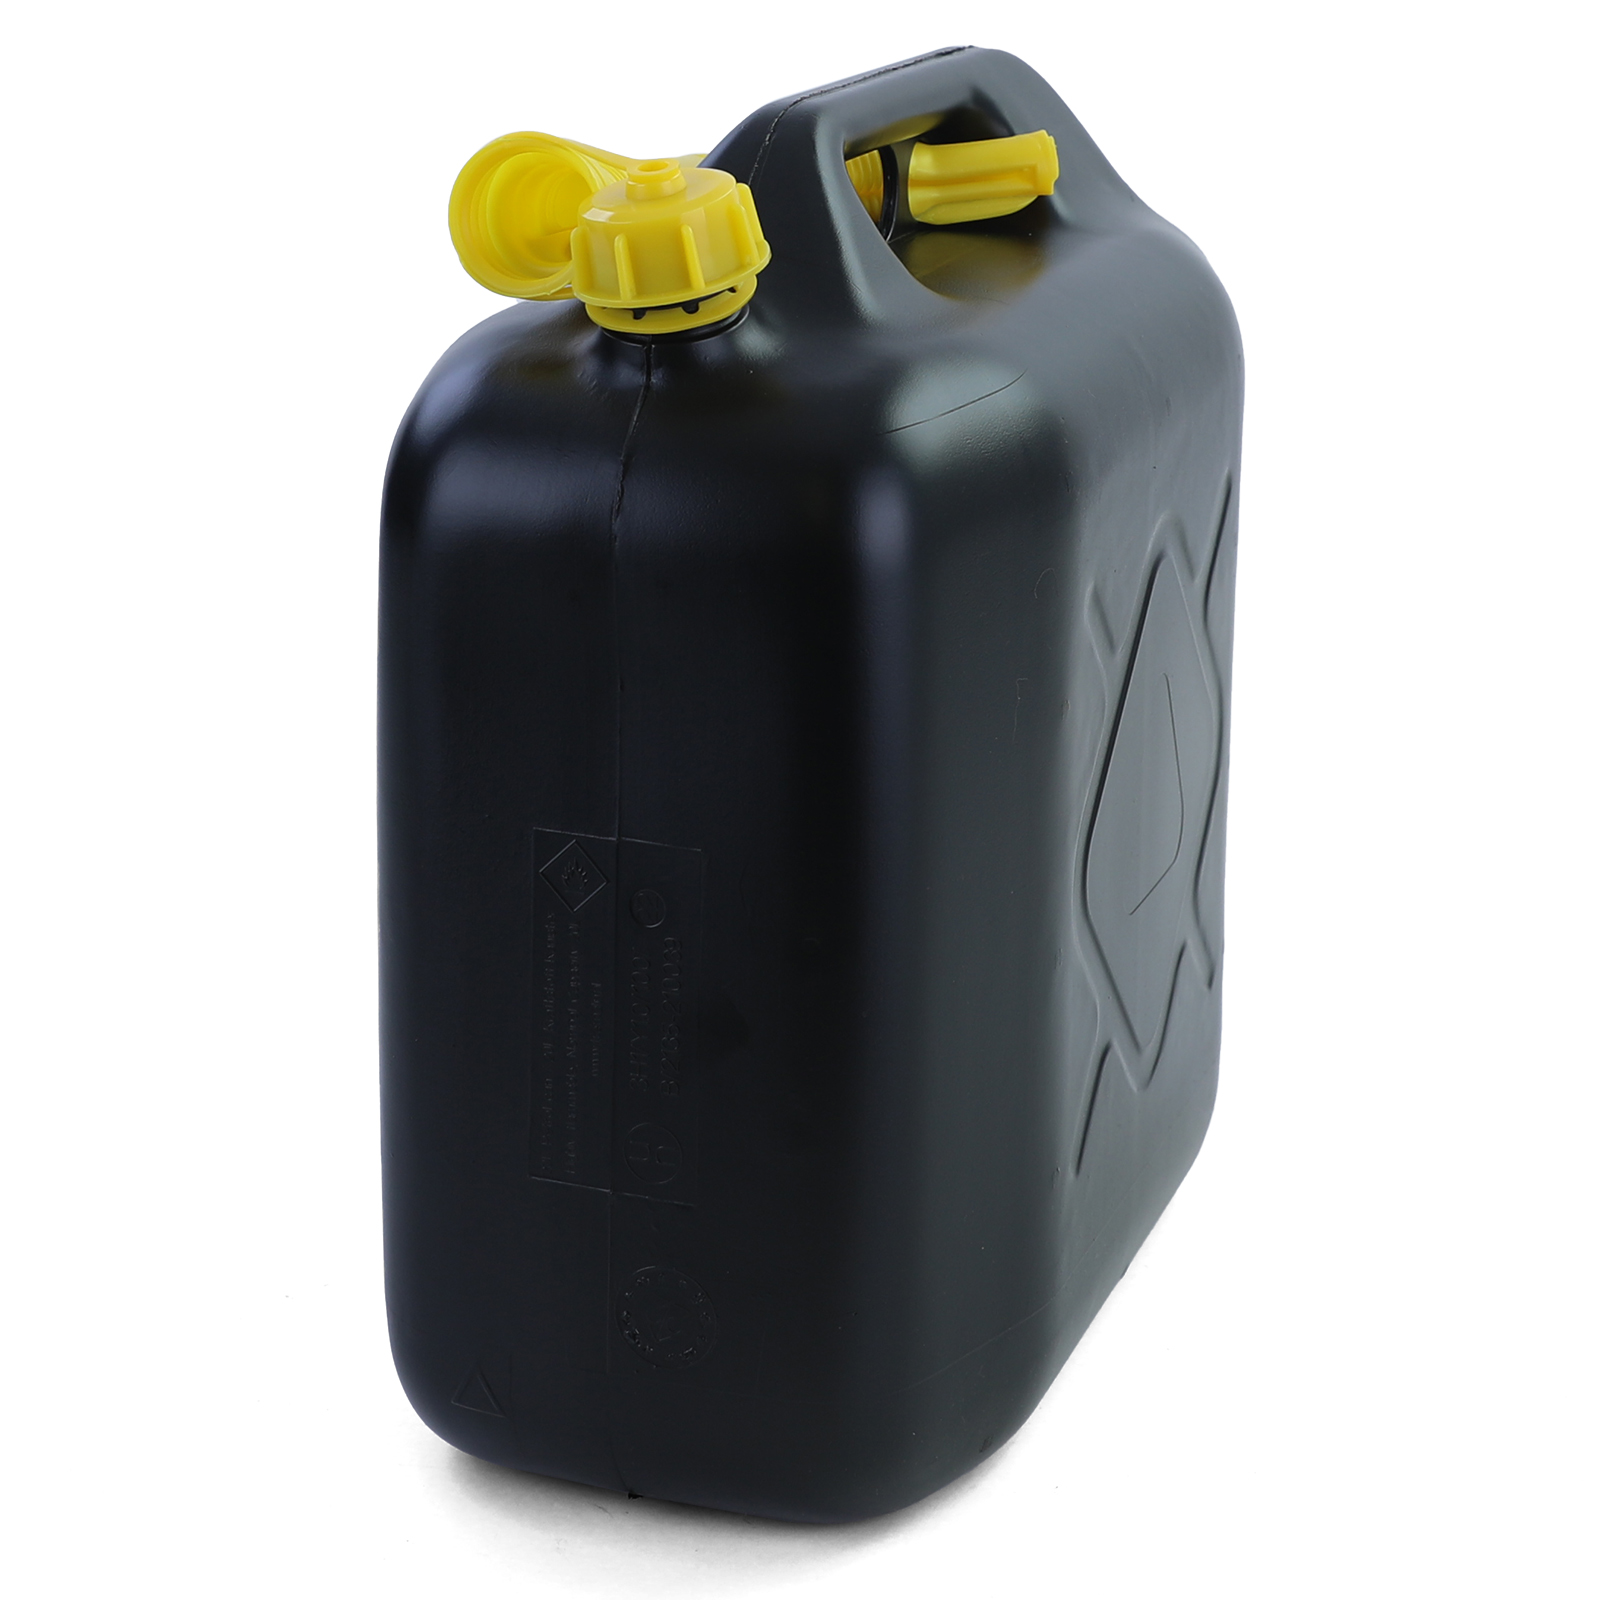 Kunststoff Reserve Kraftstoff Kanister 20L mit UN Benzinkanister E10 ,  10,99 €